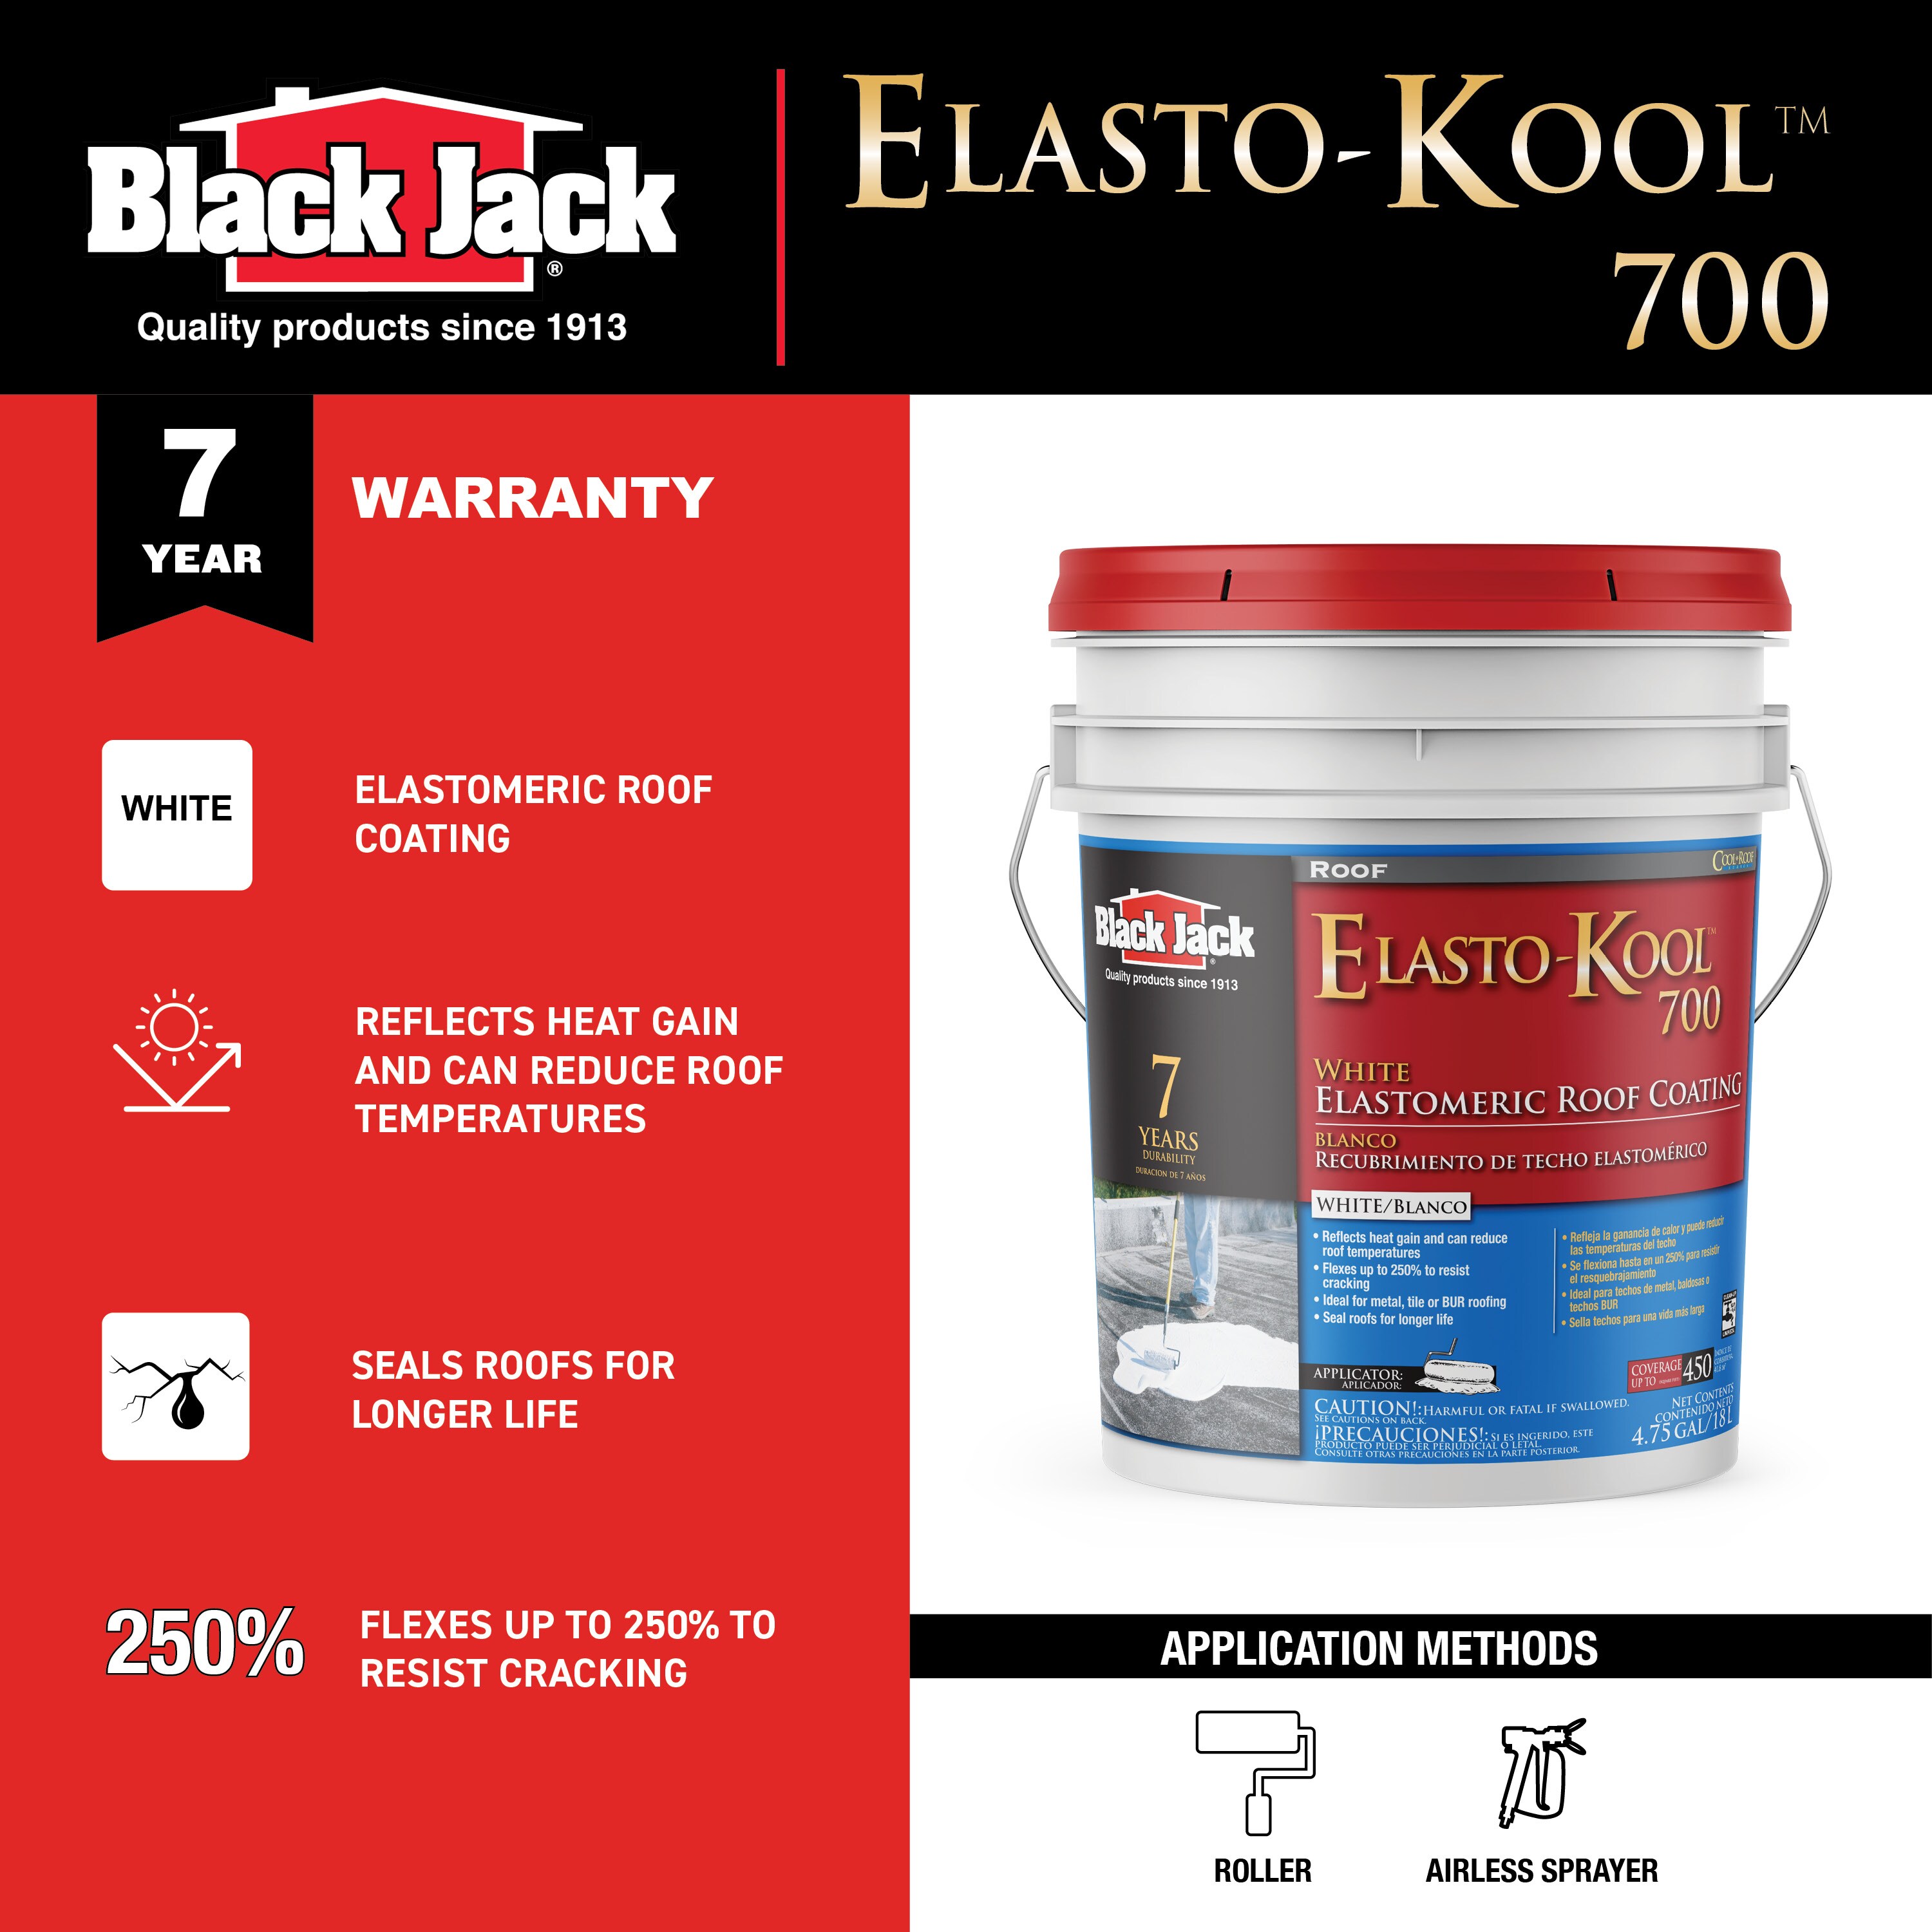 BLACK JACK Elasto-Kool 700 4.75-Gallon White Elastomeric Reflective Roof  Coating (7-year Limited Warranty) at